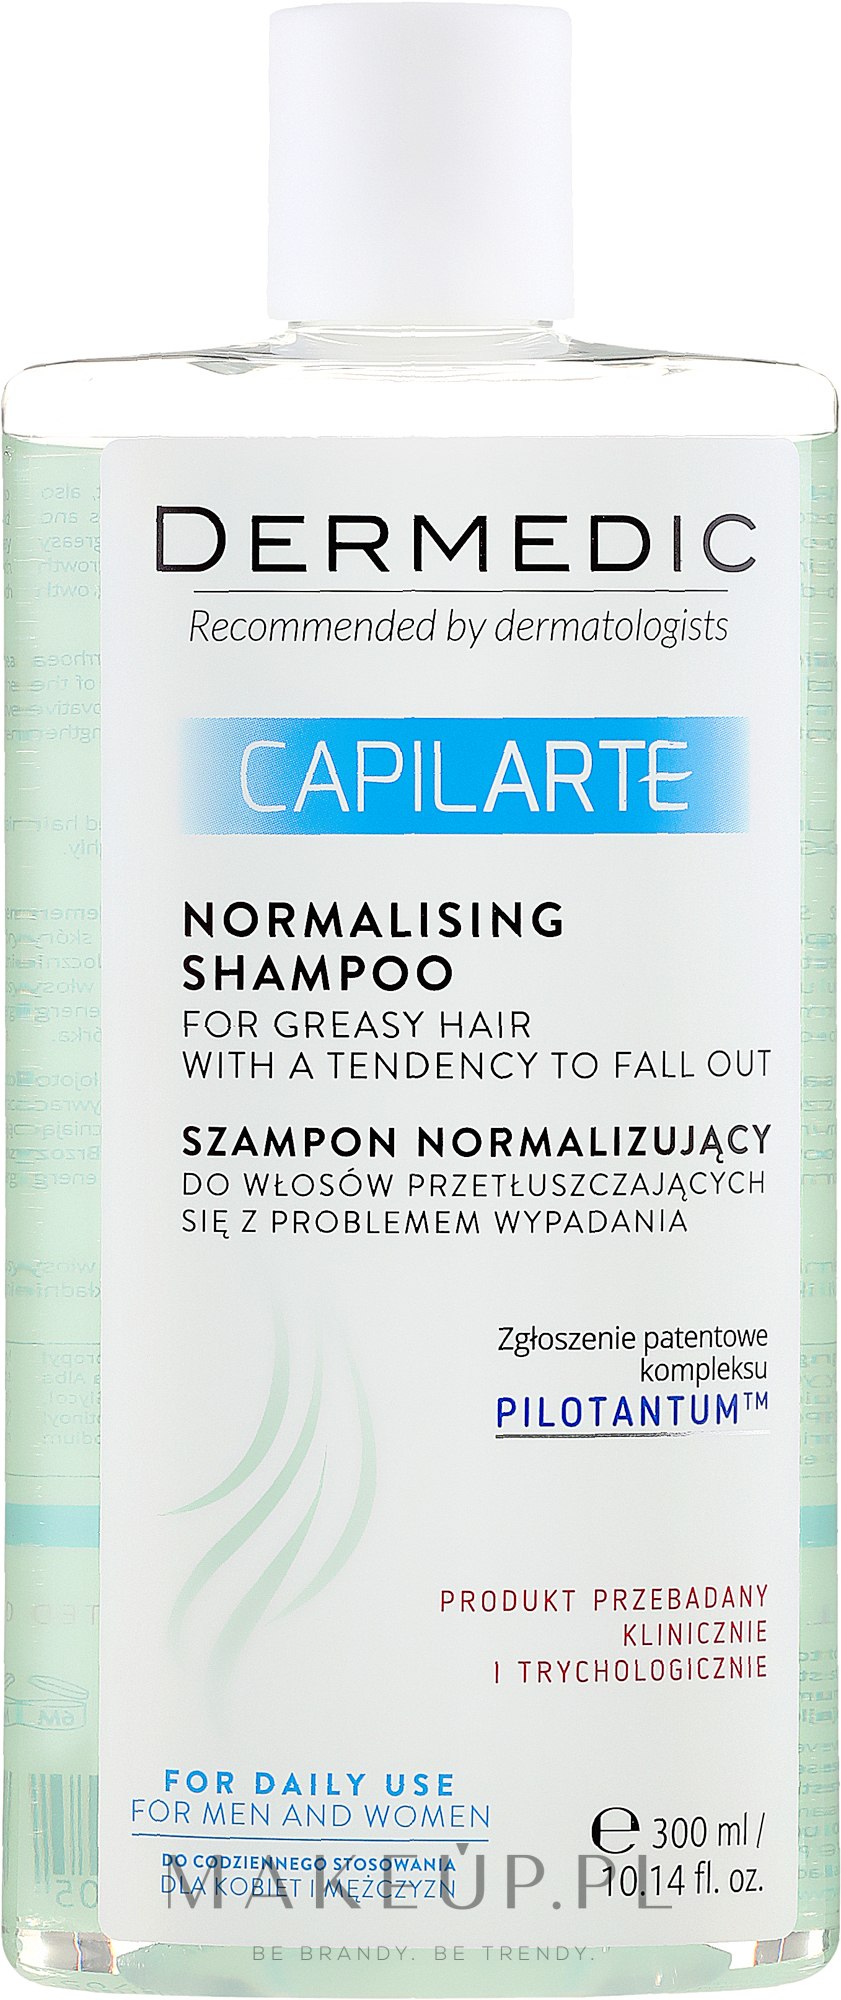 szampon normalizujący do włosów przetłuszczających się z problemem wypadania